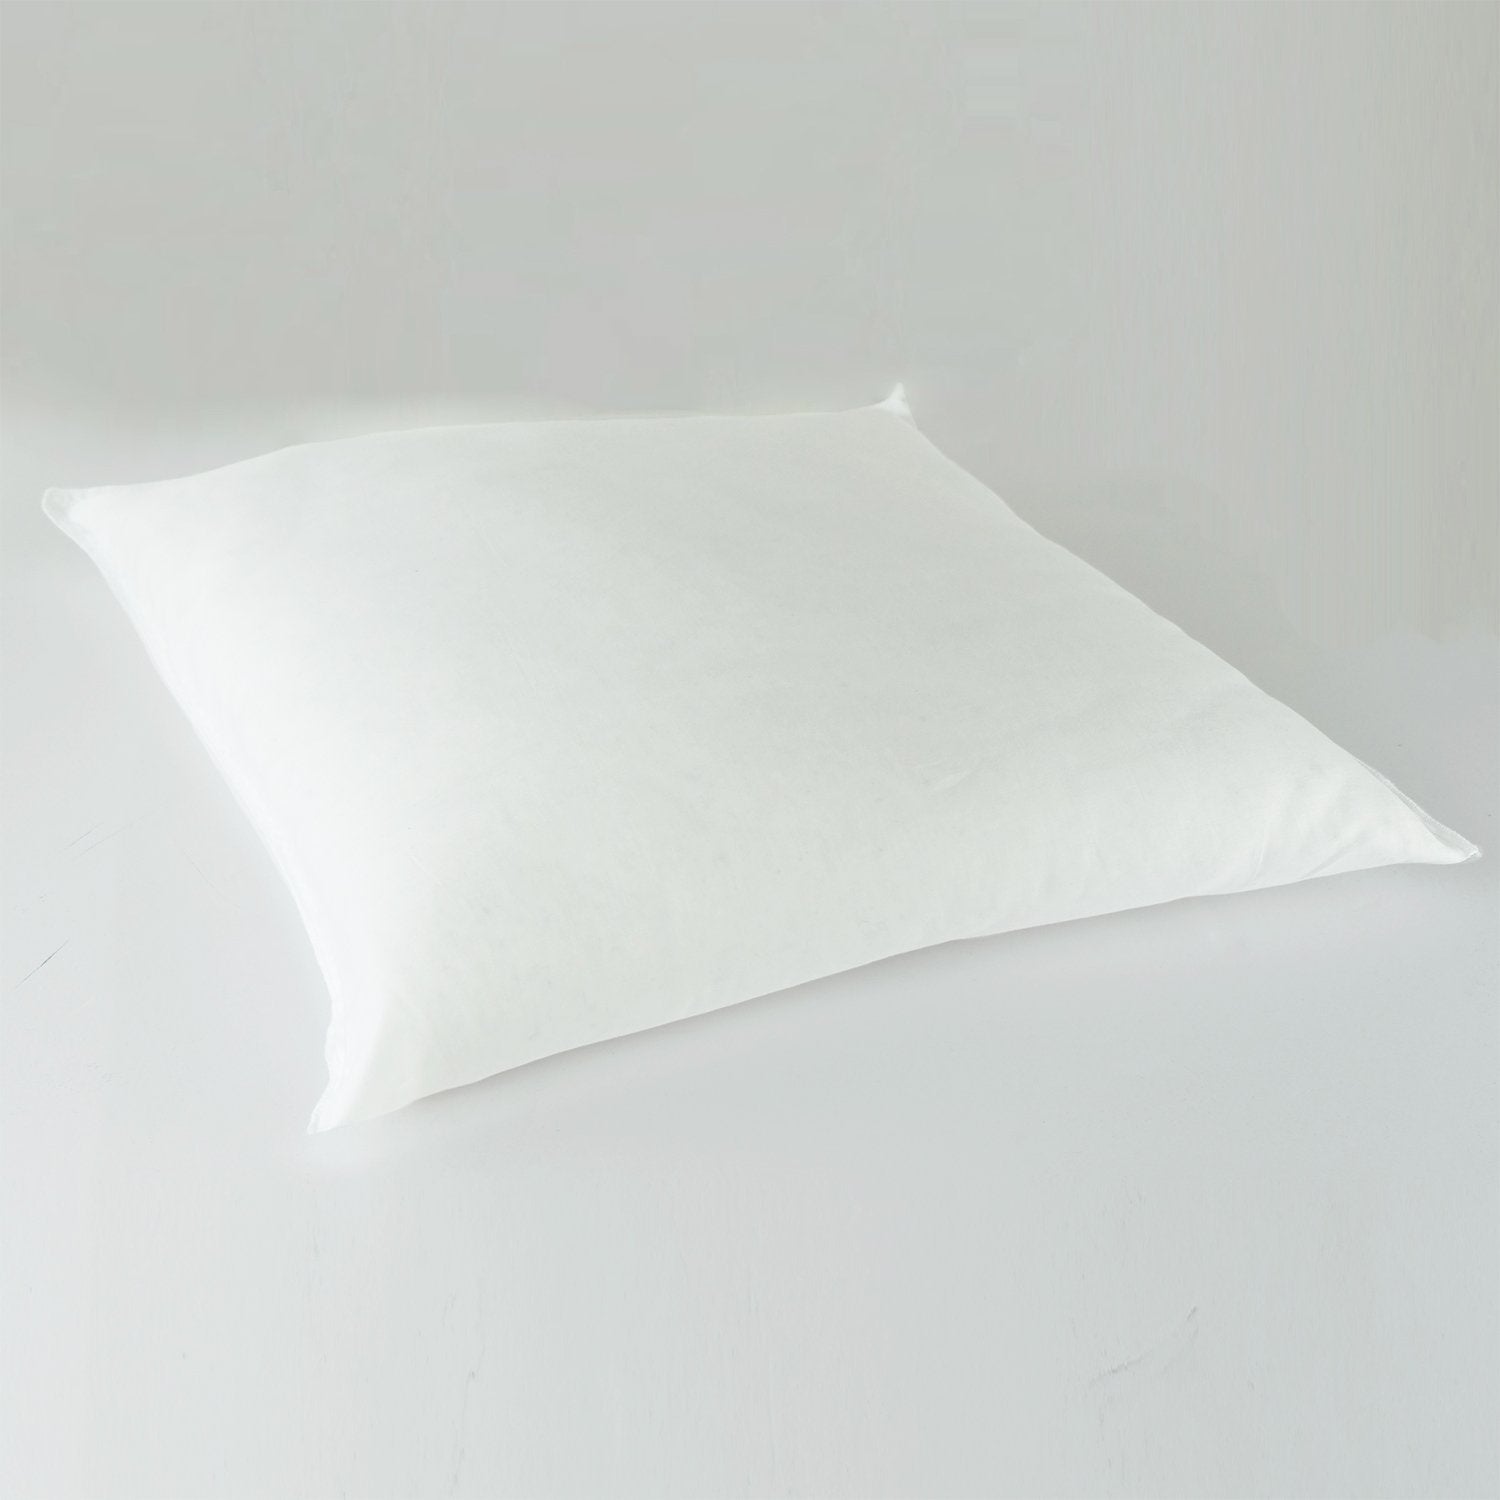 J-Life Tombo Navy Zabuton Floor Pillow_Pillows & Shams_Zabuton Floor Pillows_100% Cotton_Reversible_Handmade